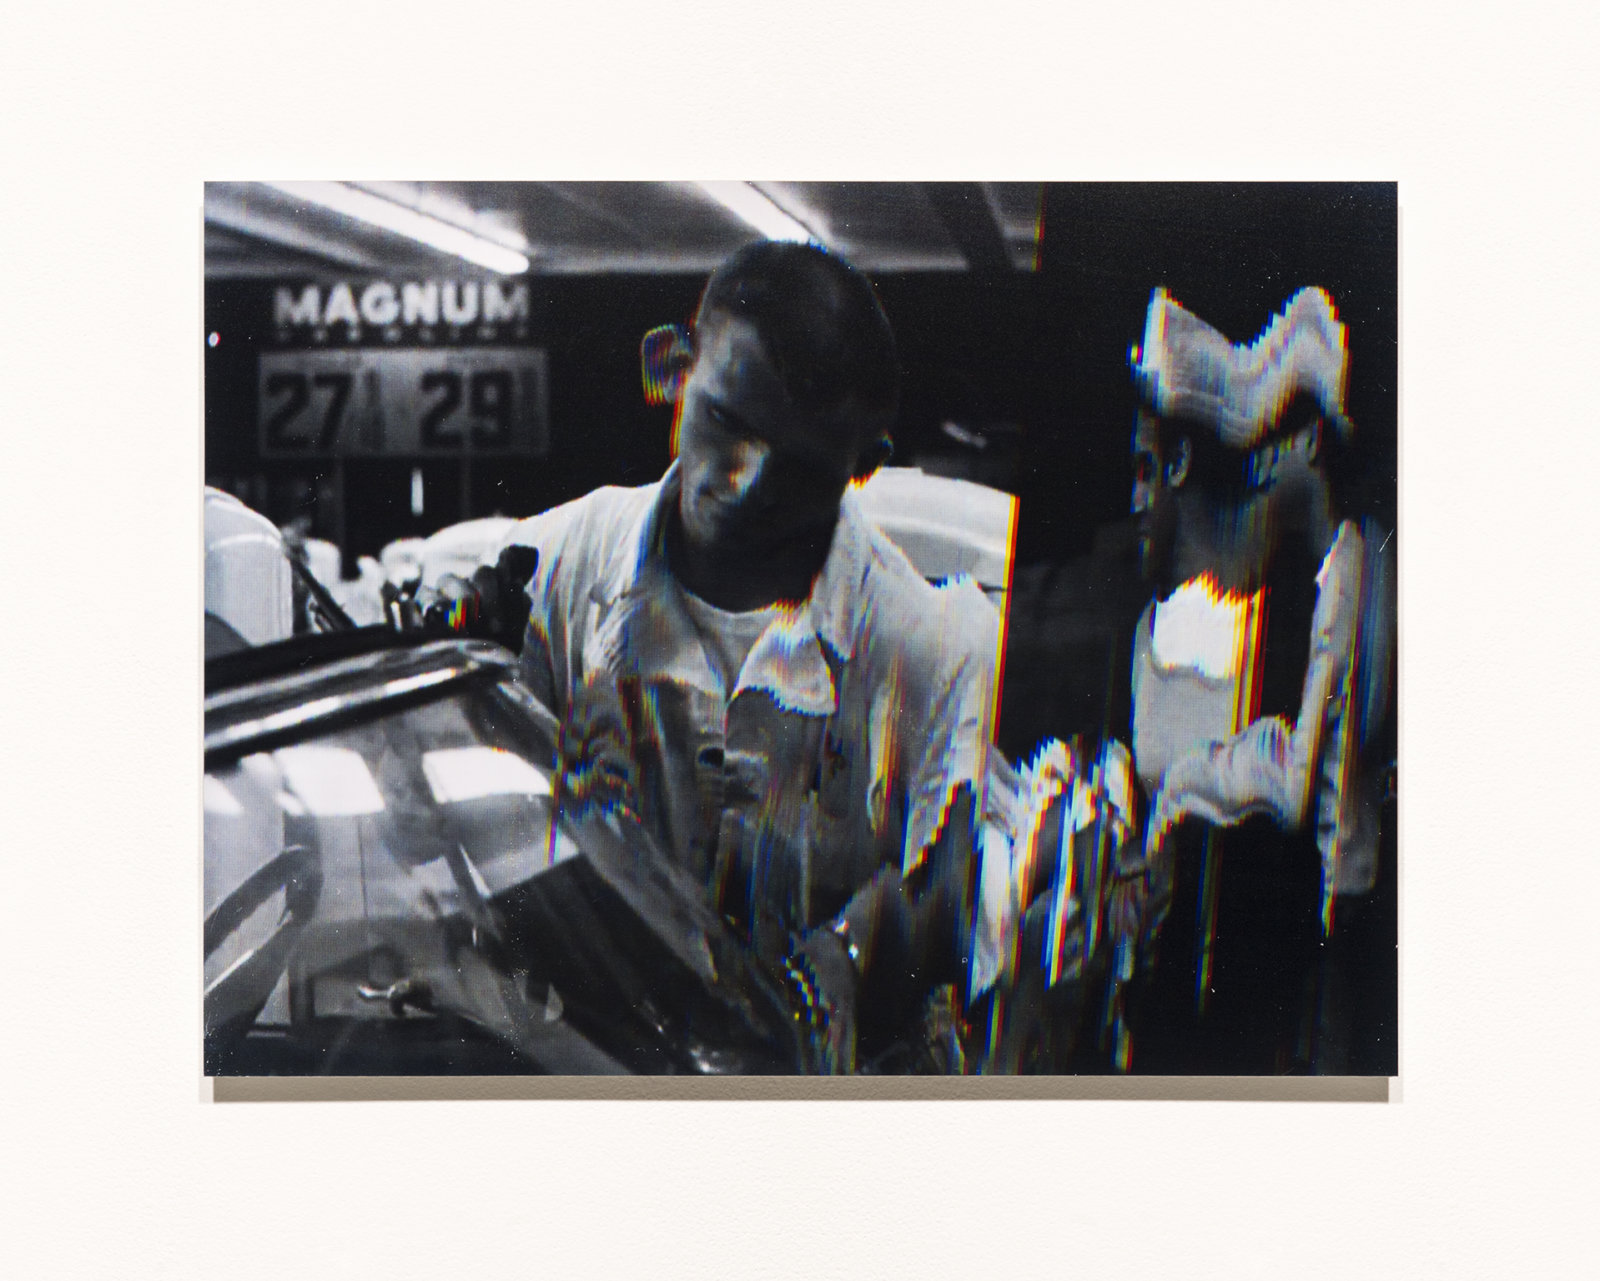 Raymond Boisjoly, Station to Station, 2014, 6 screen resolution lightjet print mounted on dibond, each 18 x 24 in. (46 x 61 cm)